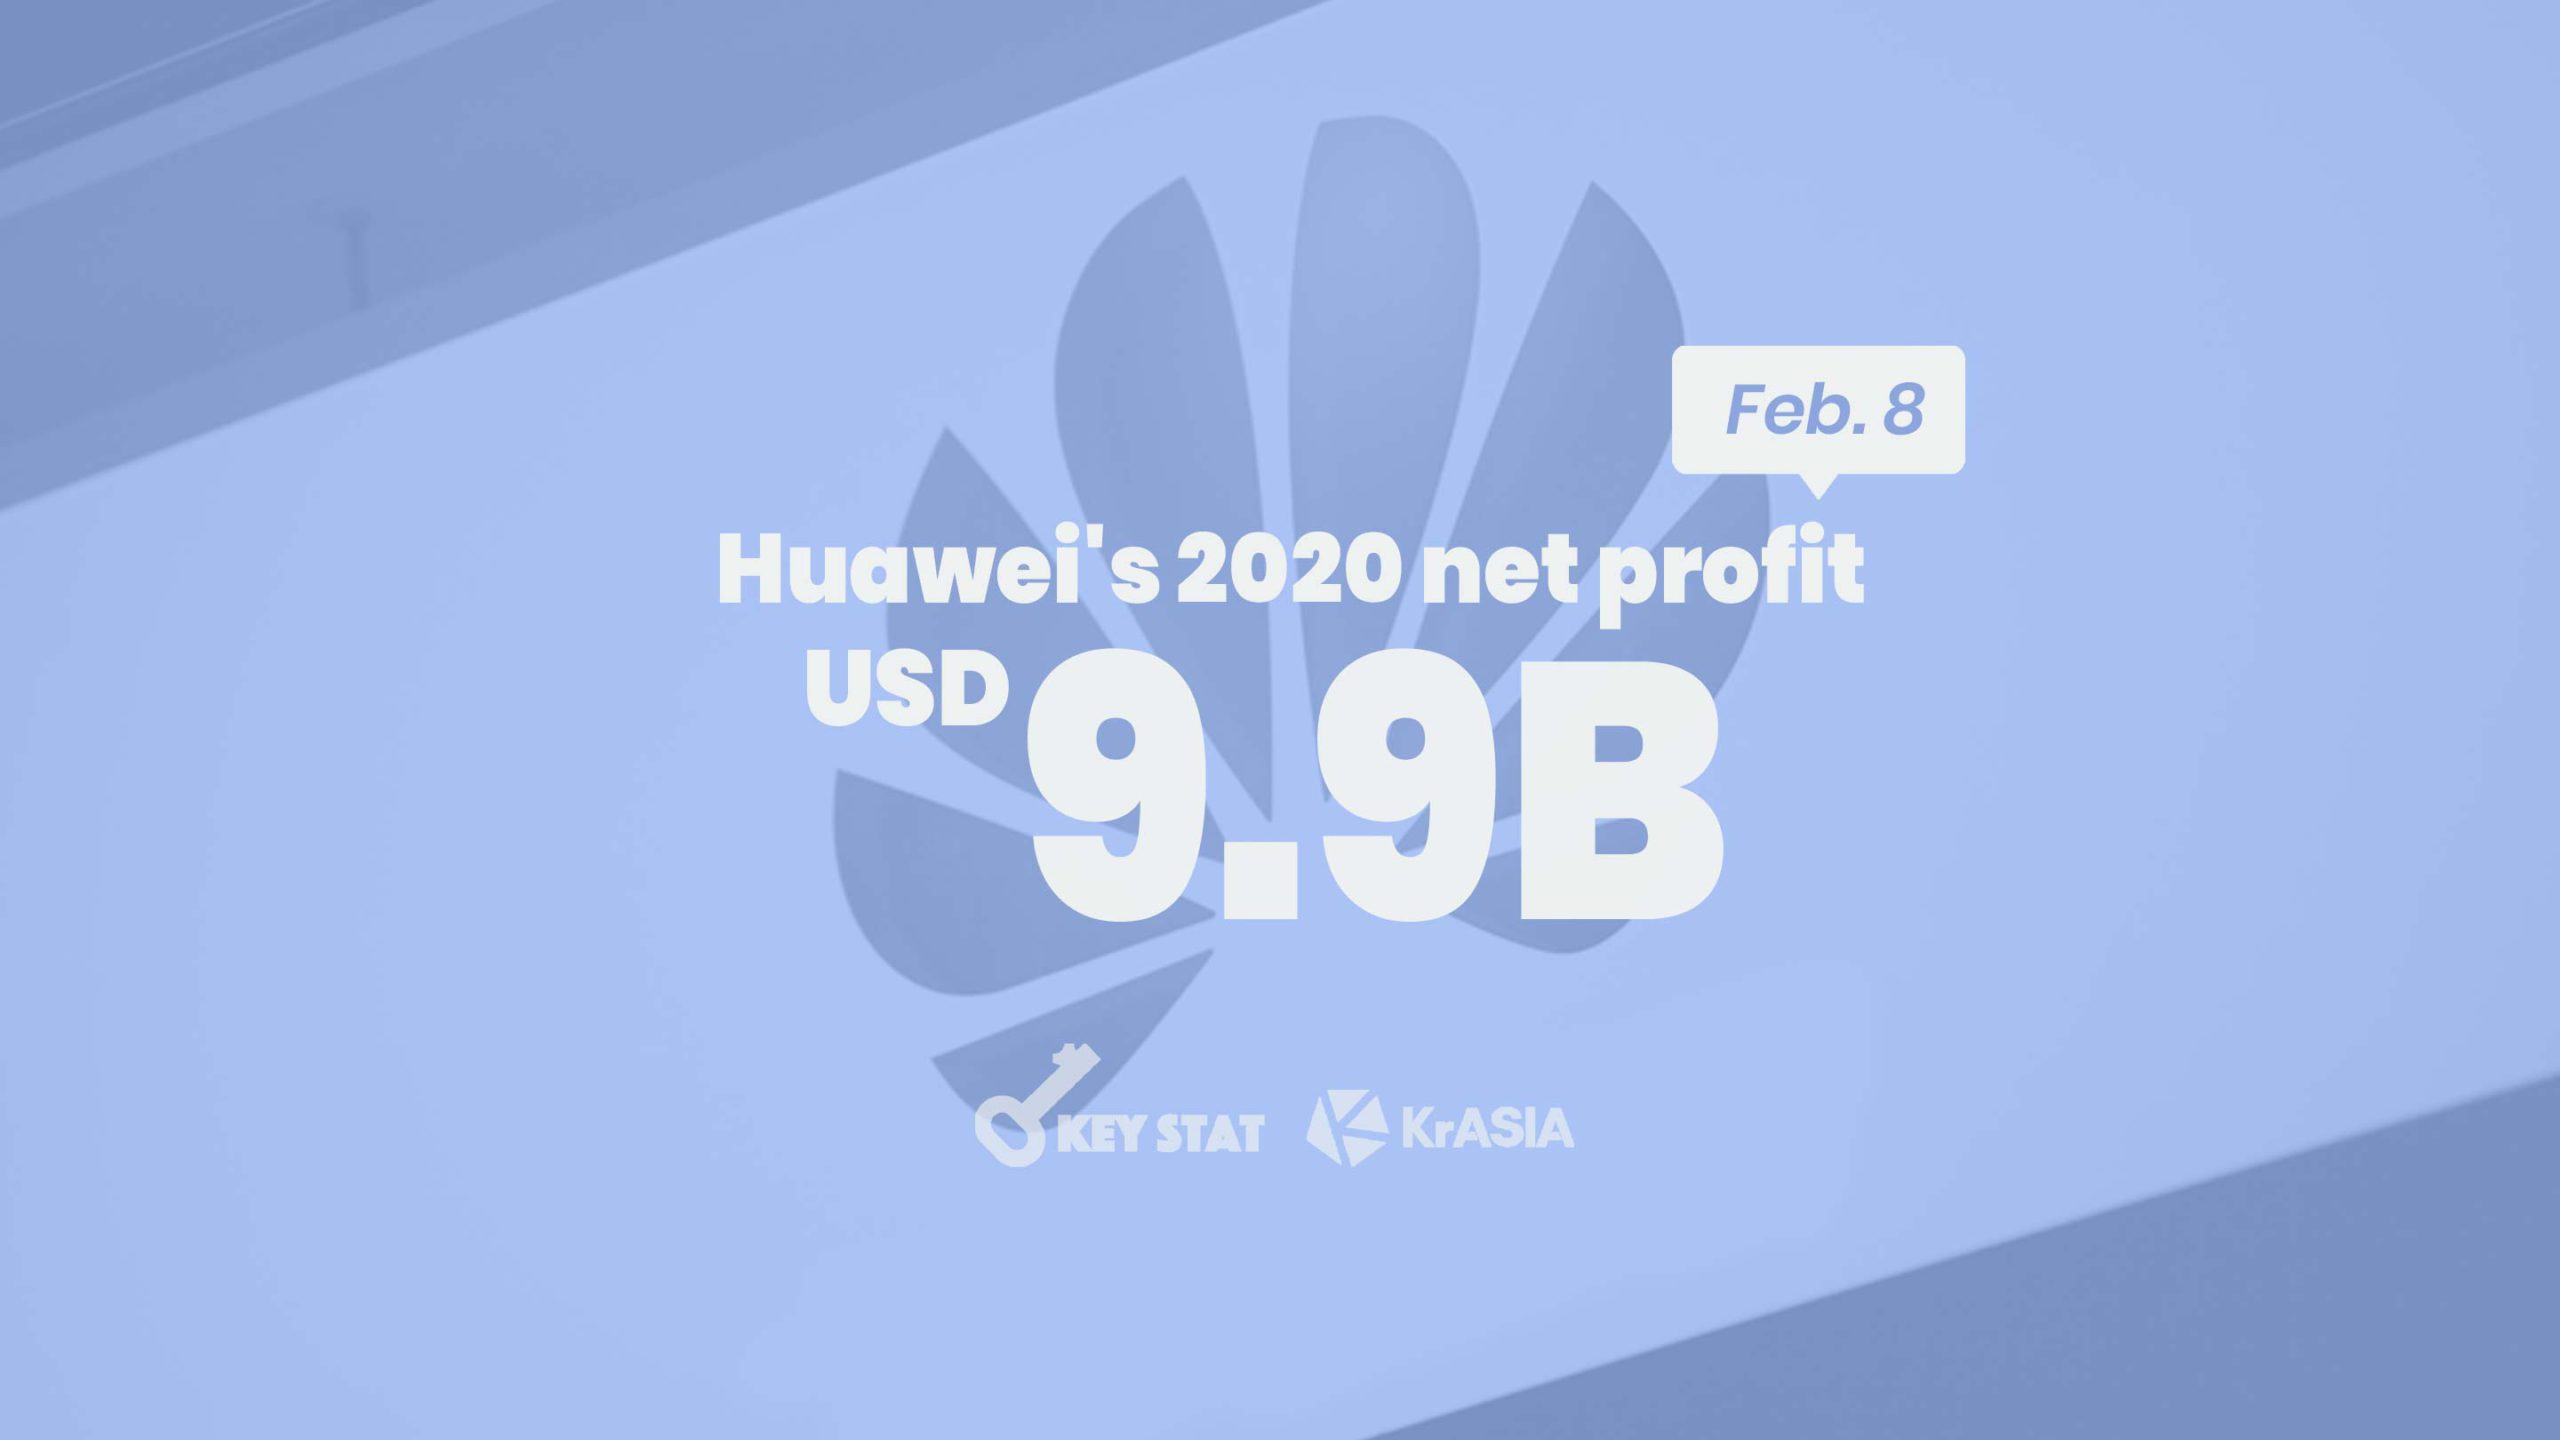 KEY STAT | Huawei earns larger net profit in 2020 despite global headwinds